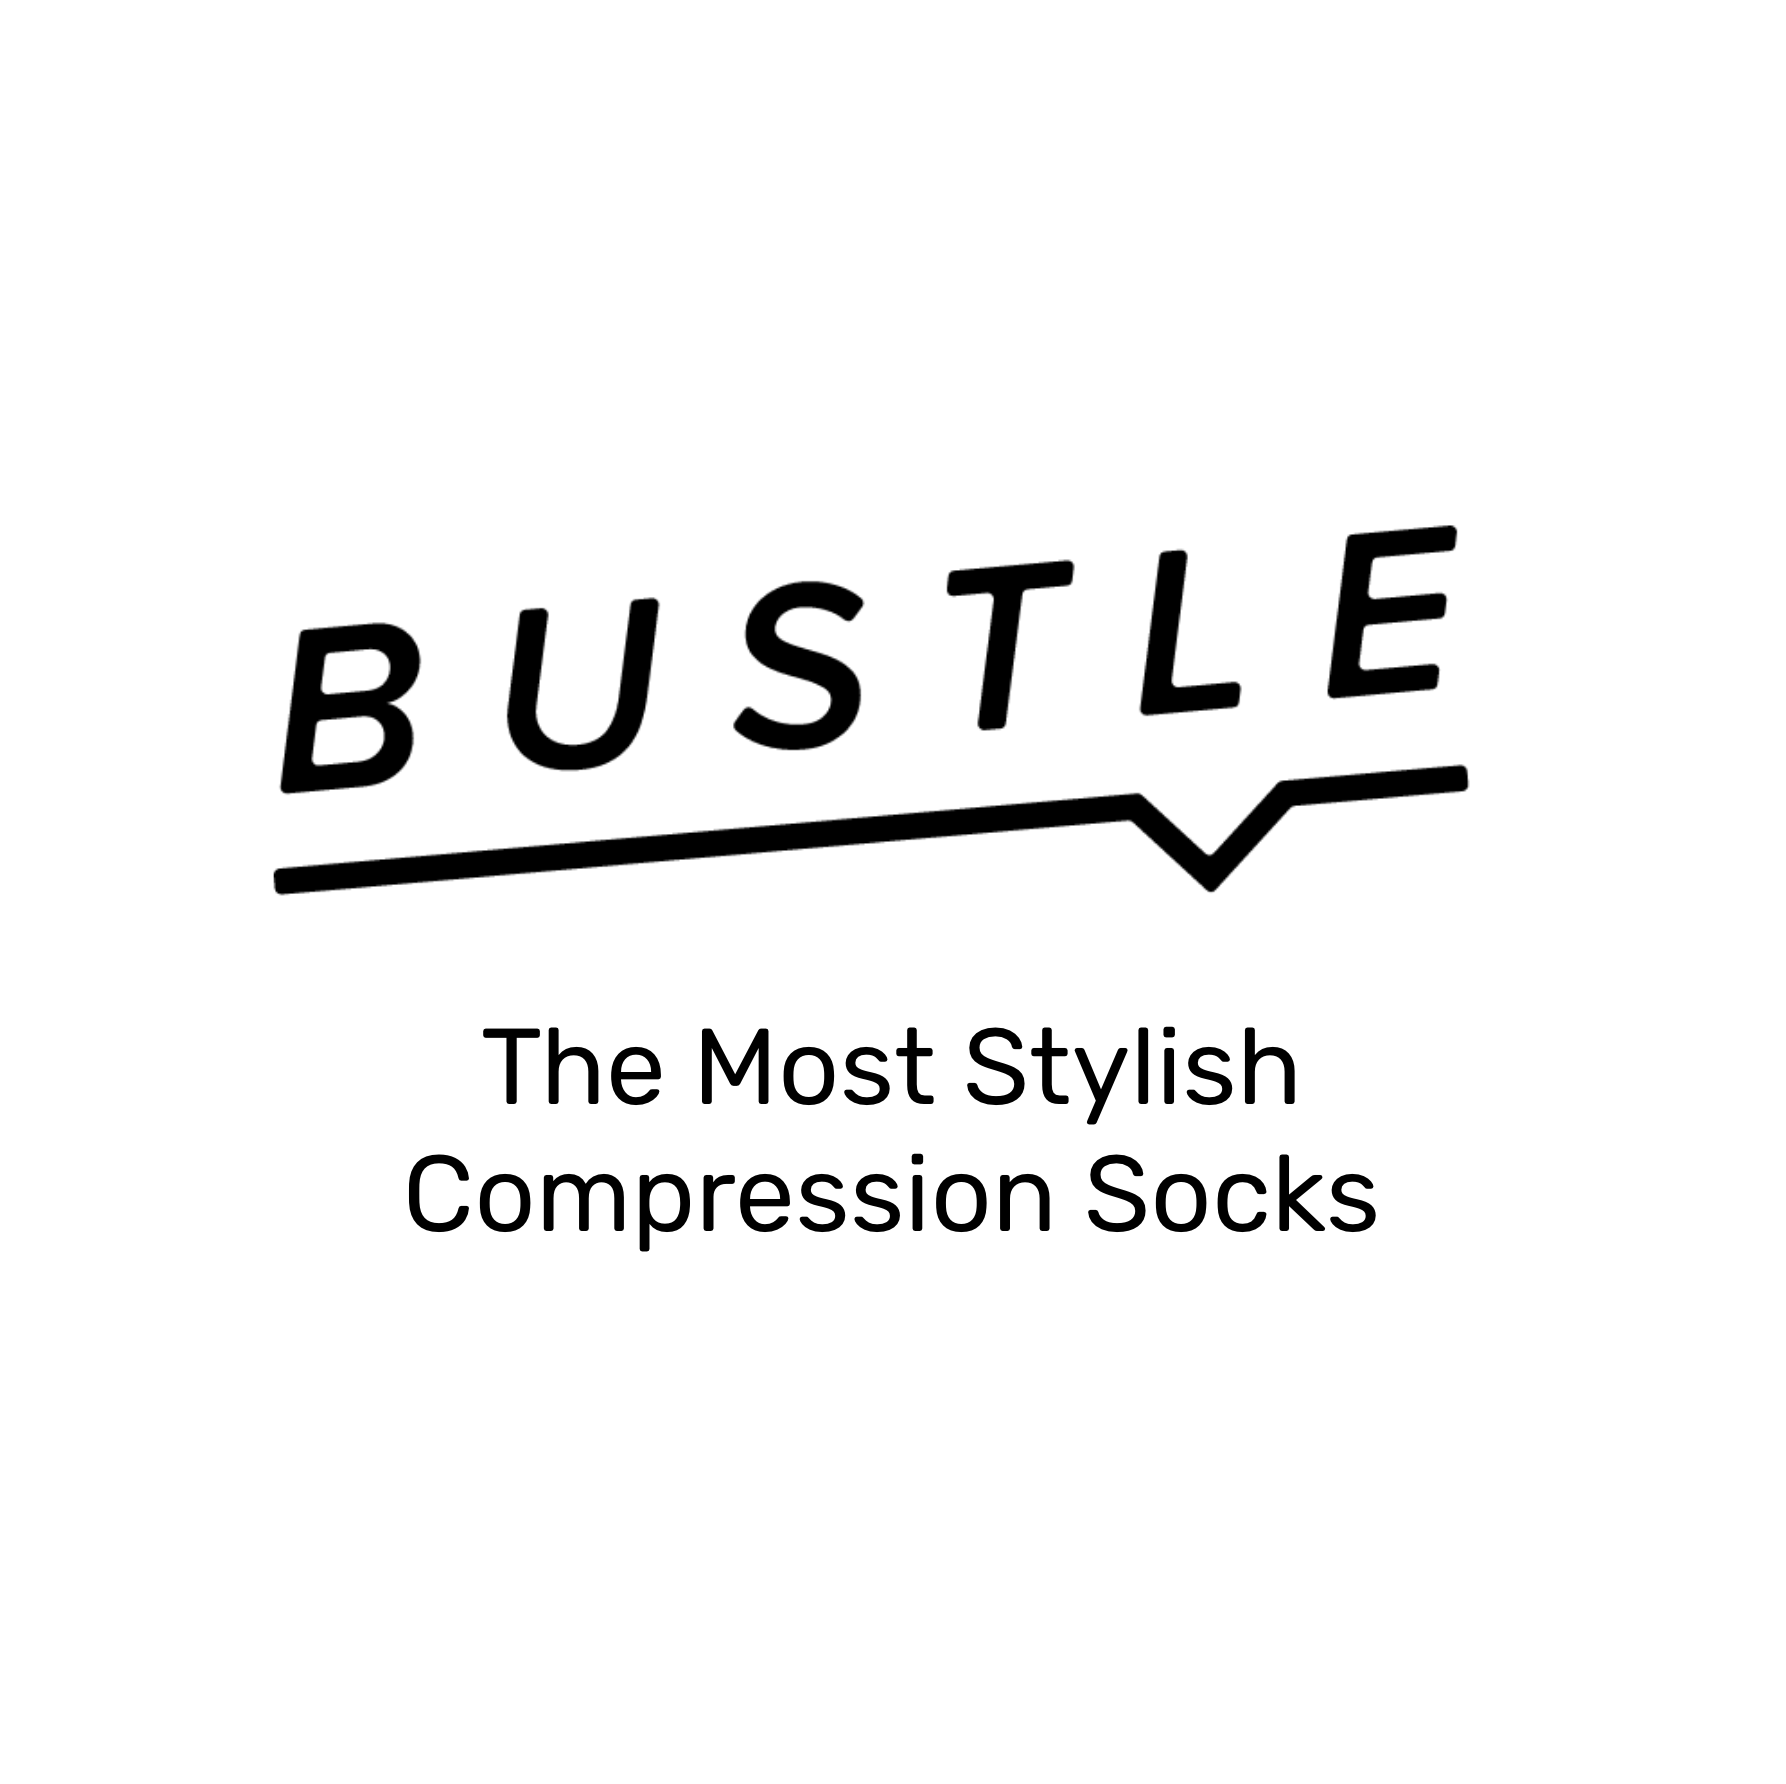 Bustle.com